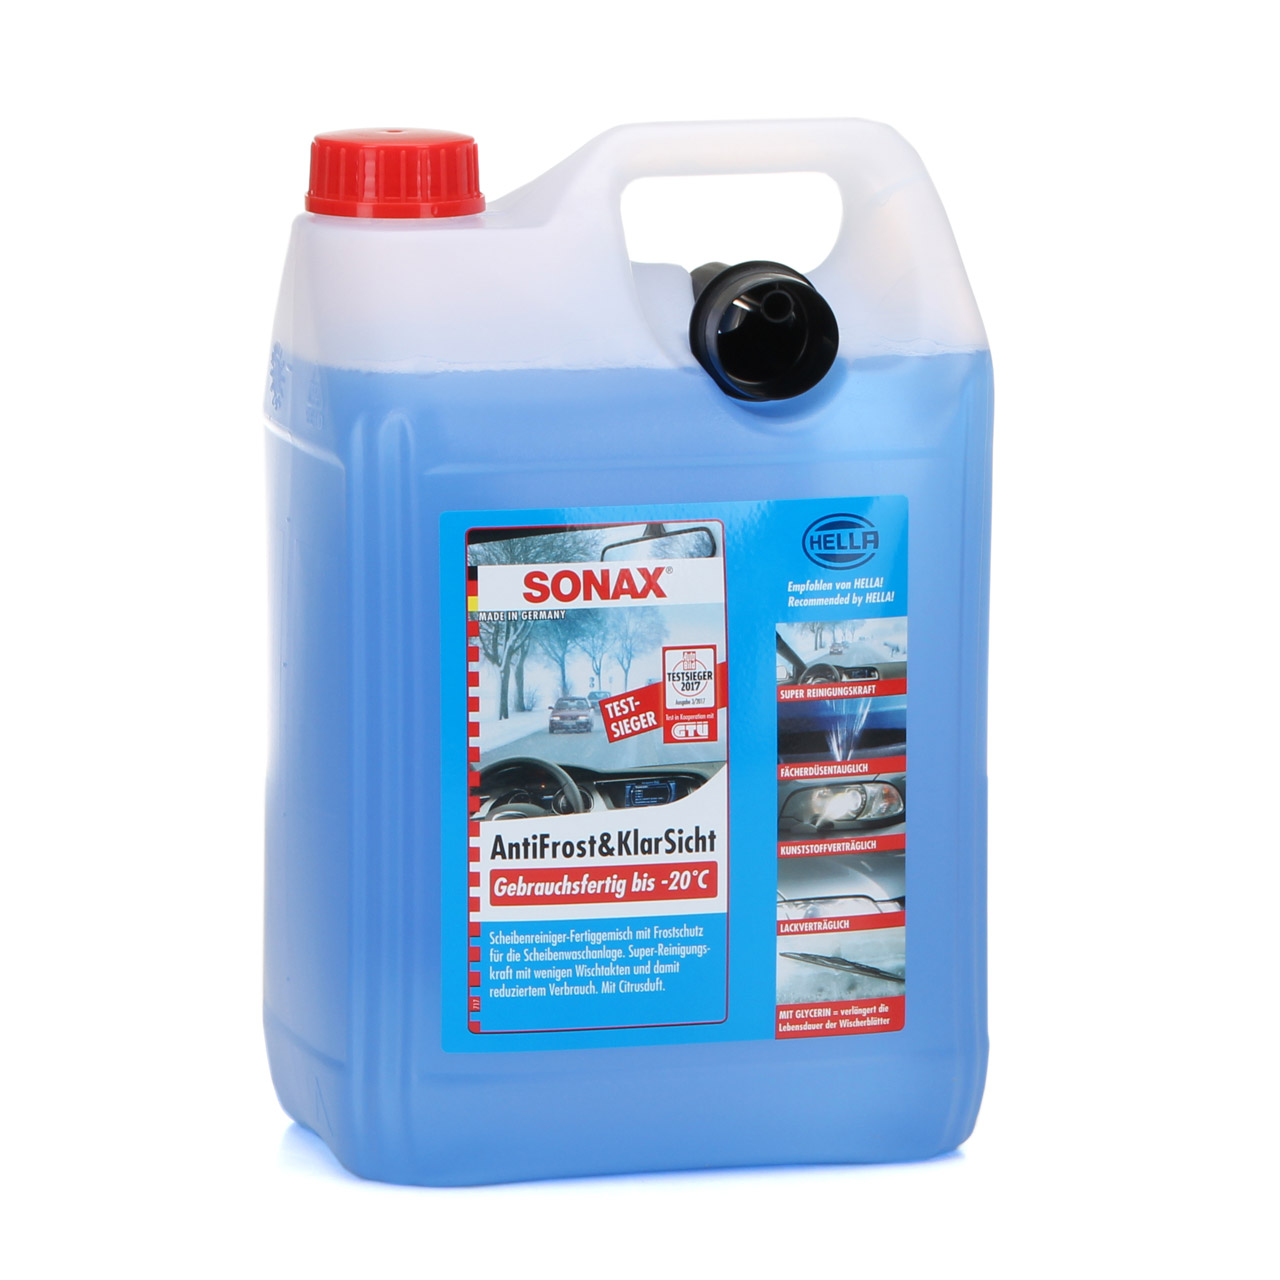 15L 15 Liter SONAX Frostschutz ANTIFROST & KLARSICHT gebrauchsfertig bis -20°C